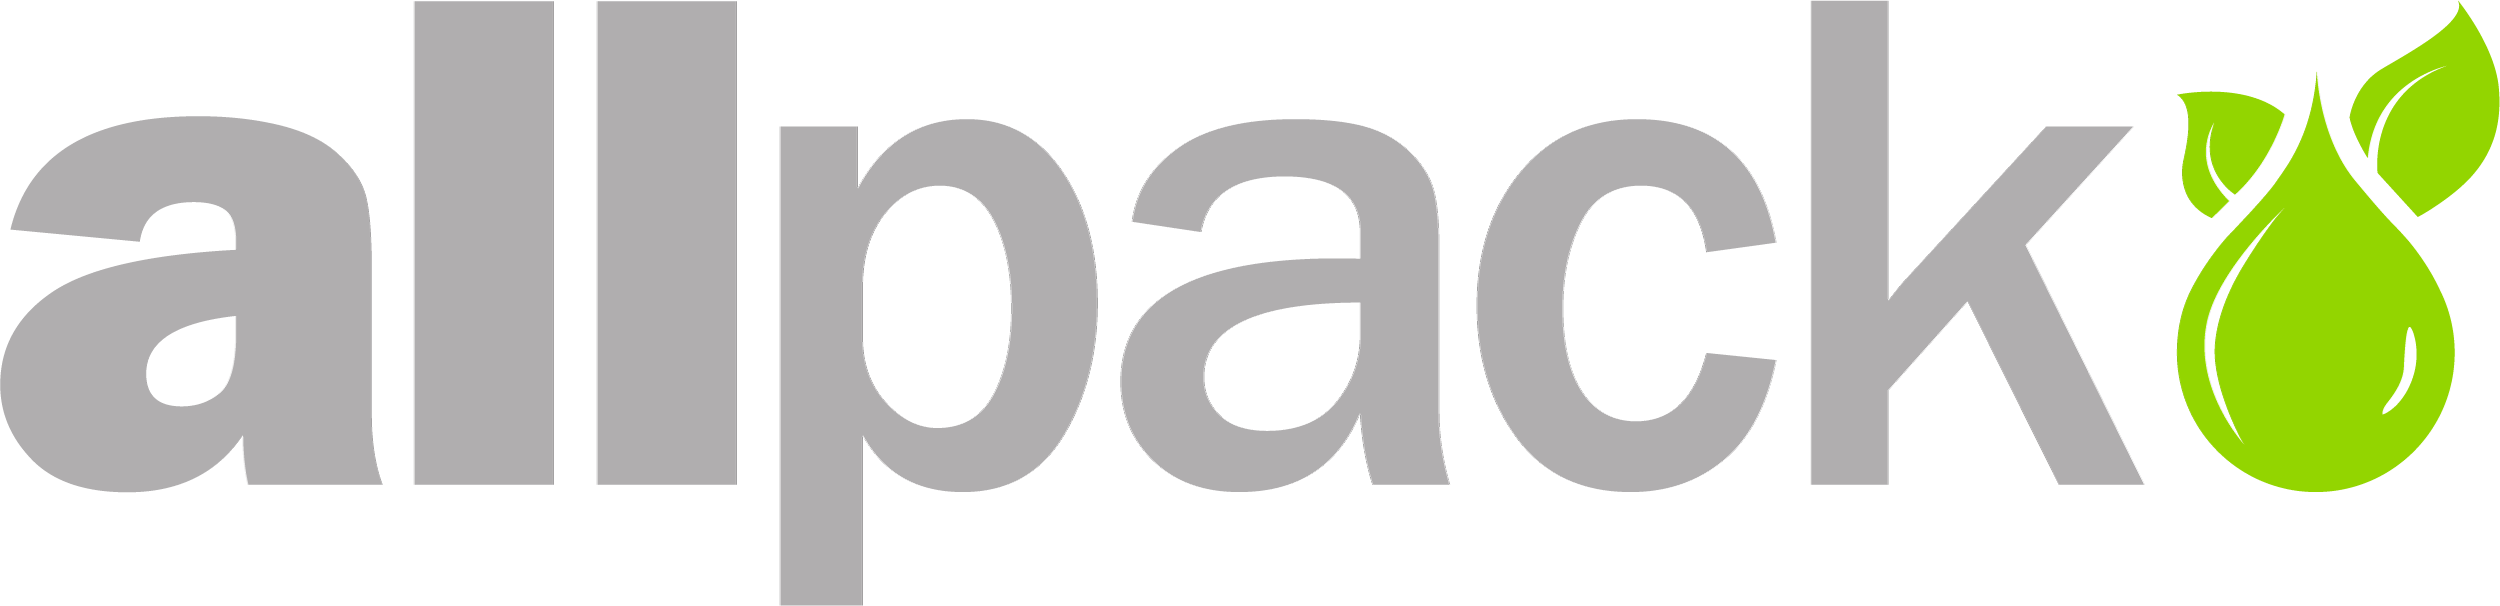 Allpack logo